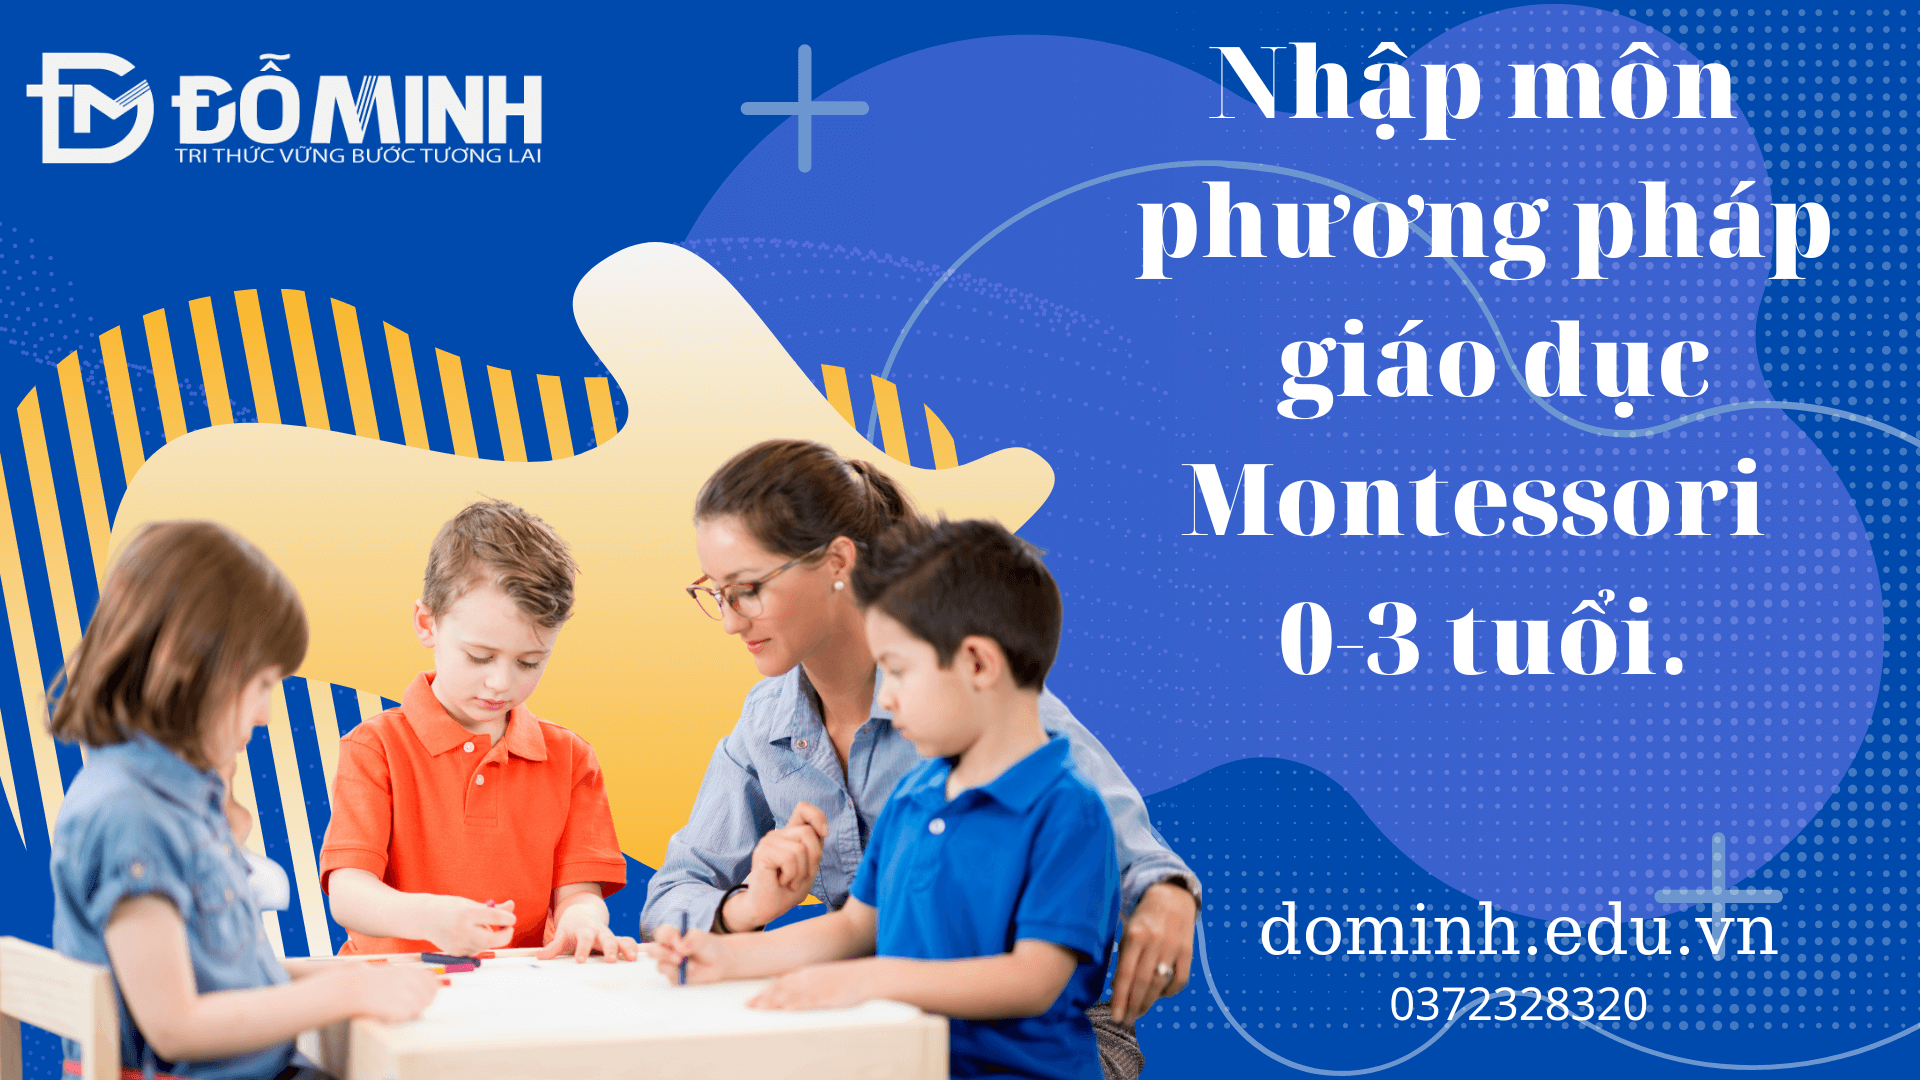 Nhập môn phuong pháp Montessori 0-3 tuổi